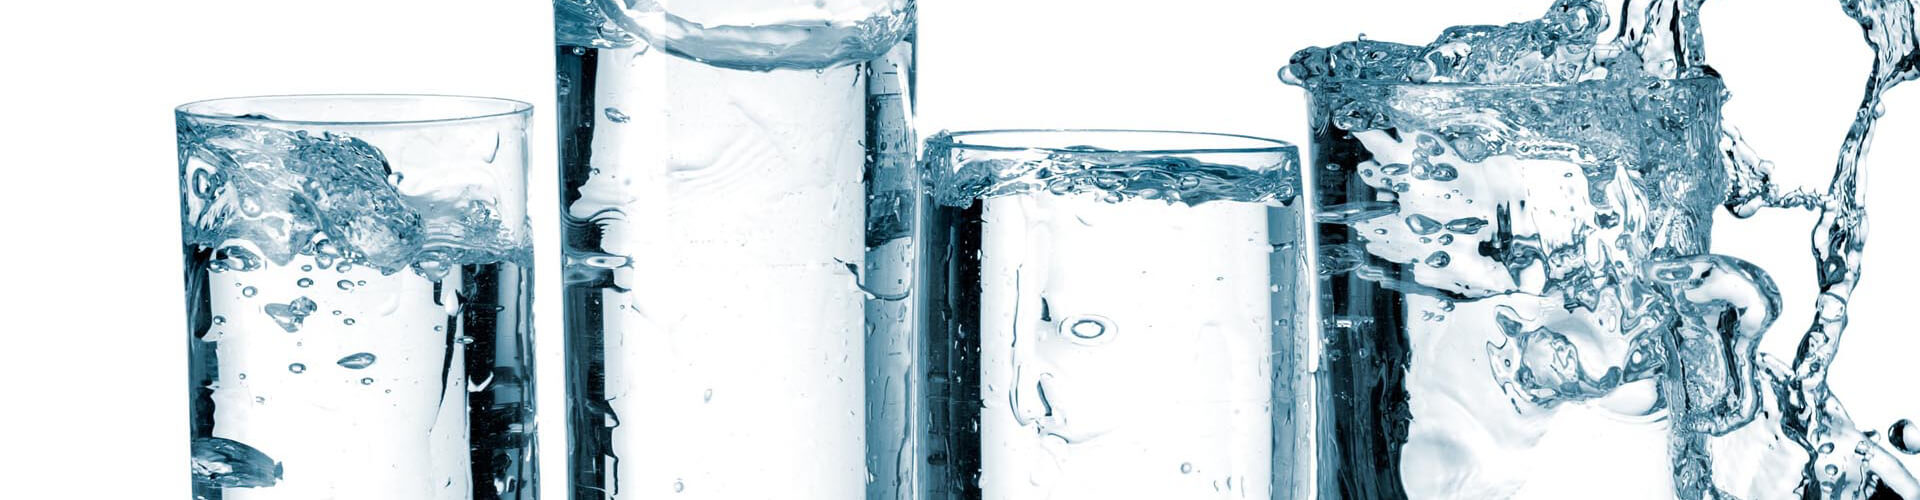 DMD - Trattamento acqua con biossido di cloro - Sistema anti legionella